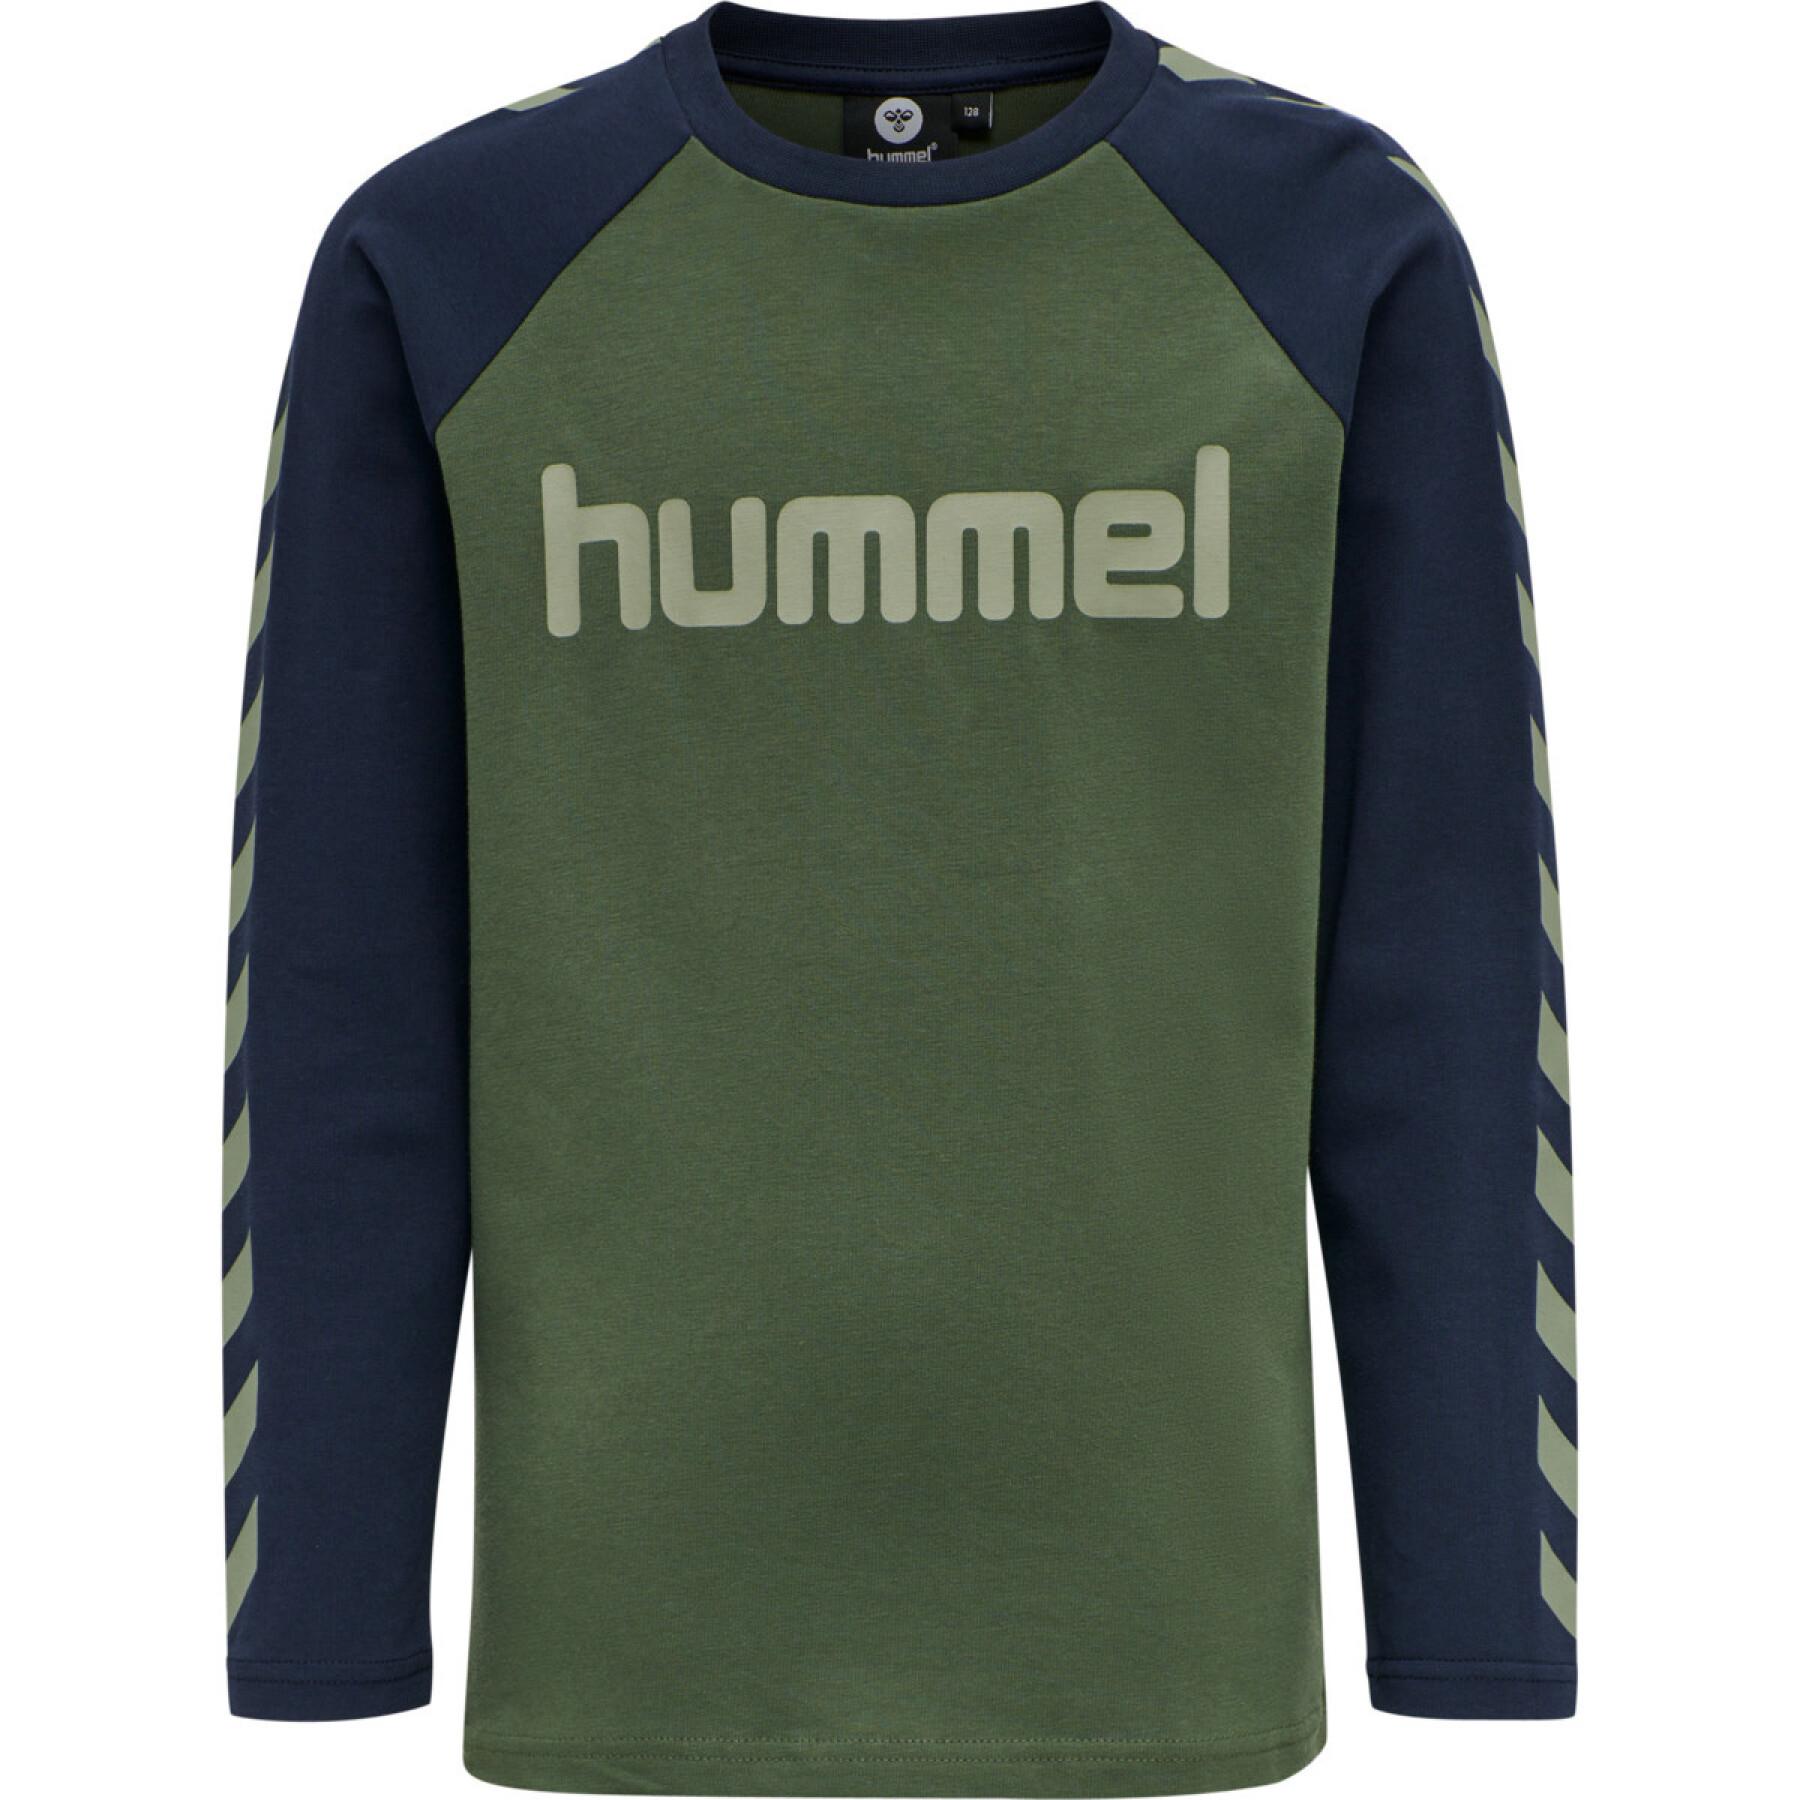 T-shirt de criança Hummel Hmlboys